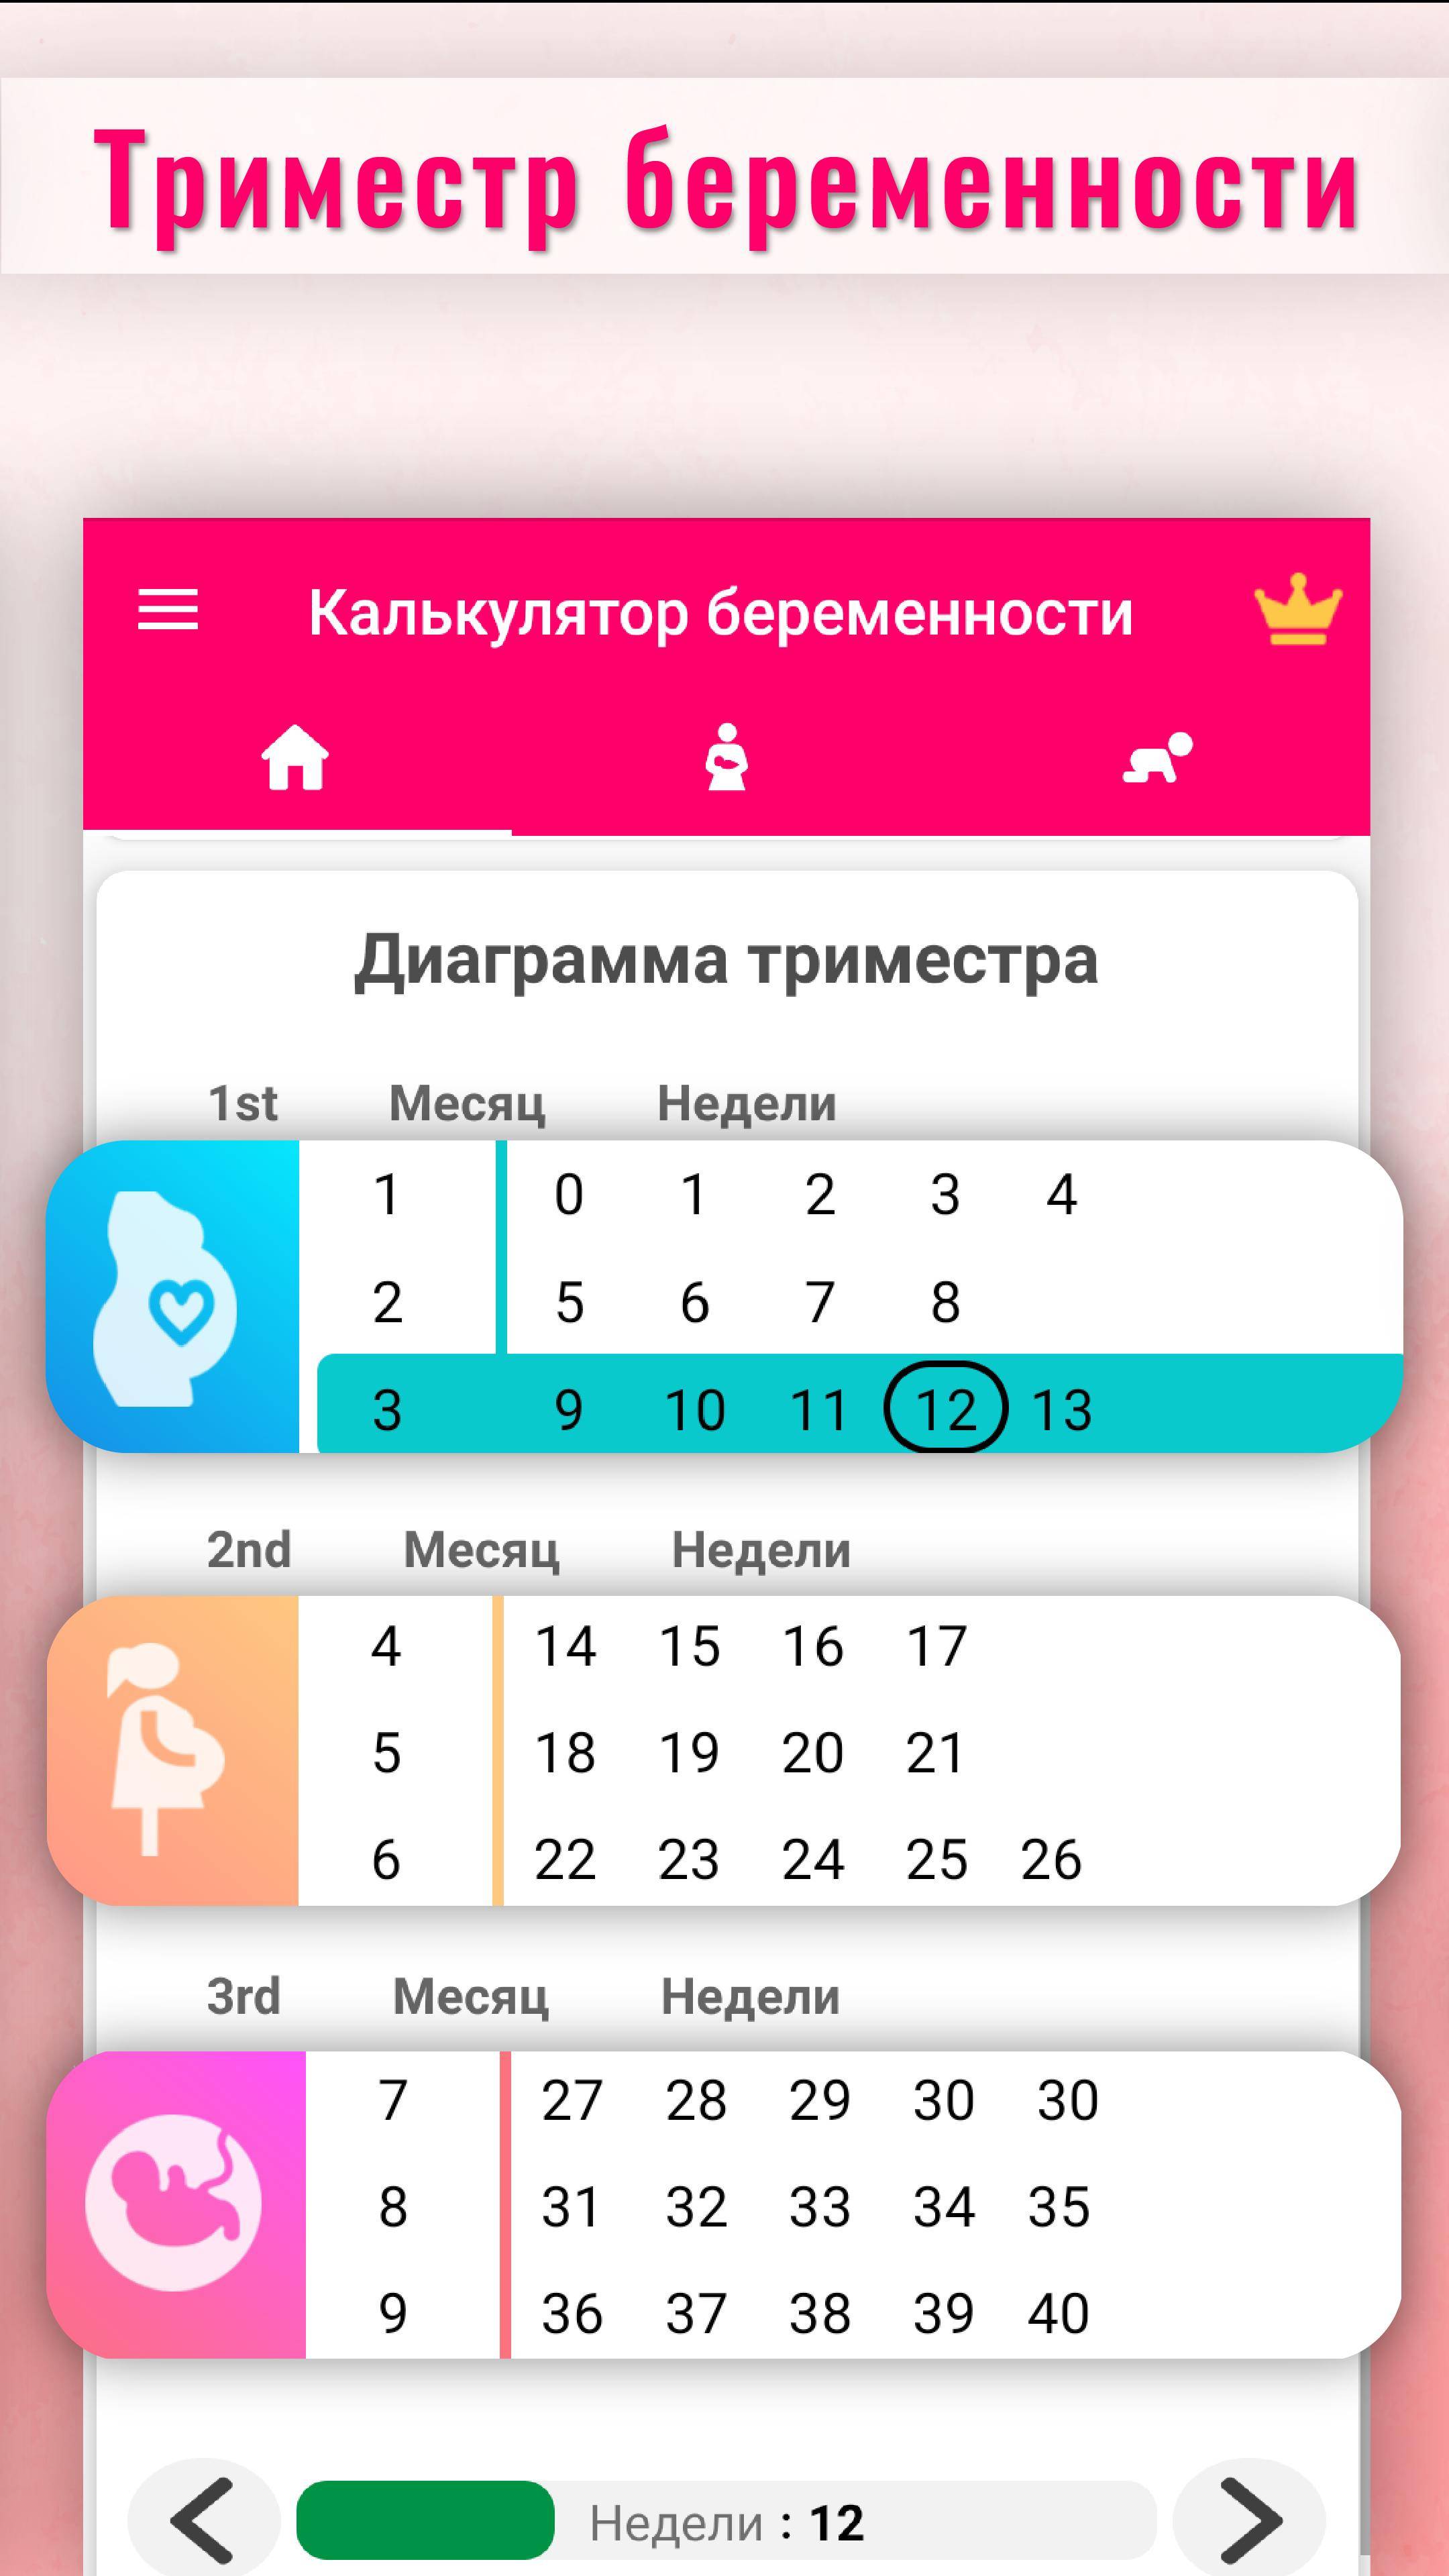 Календарь беременности с расчетом срока по неделям и дням